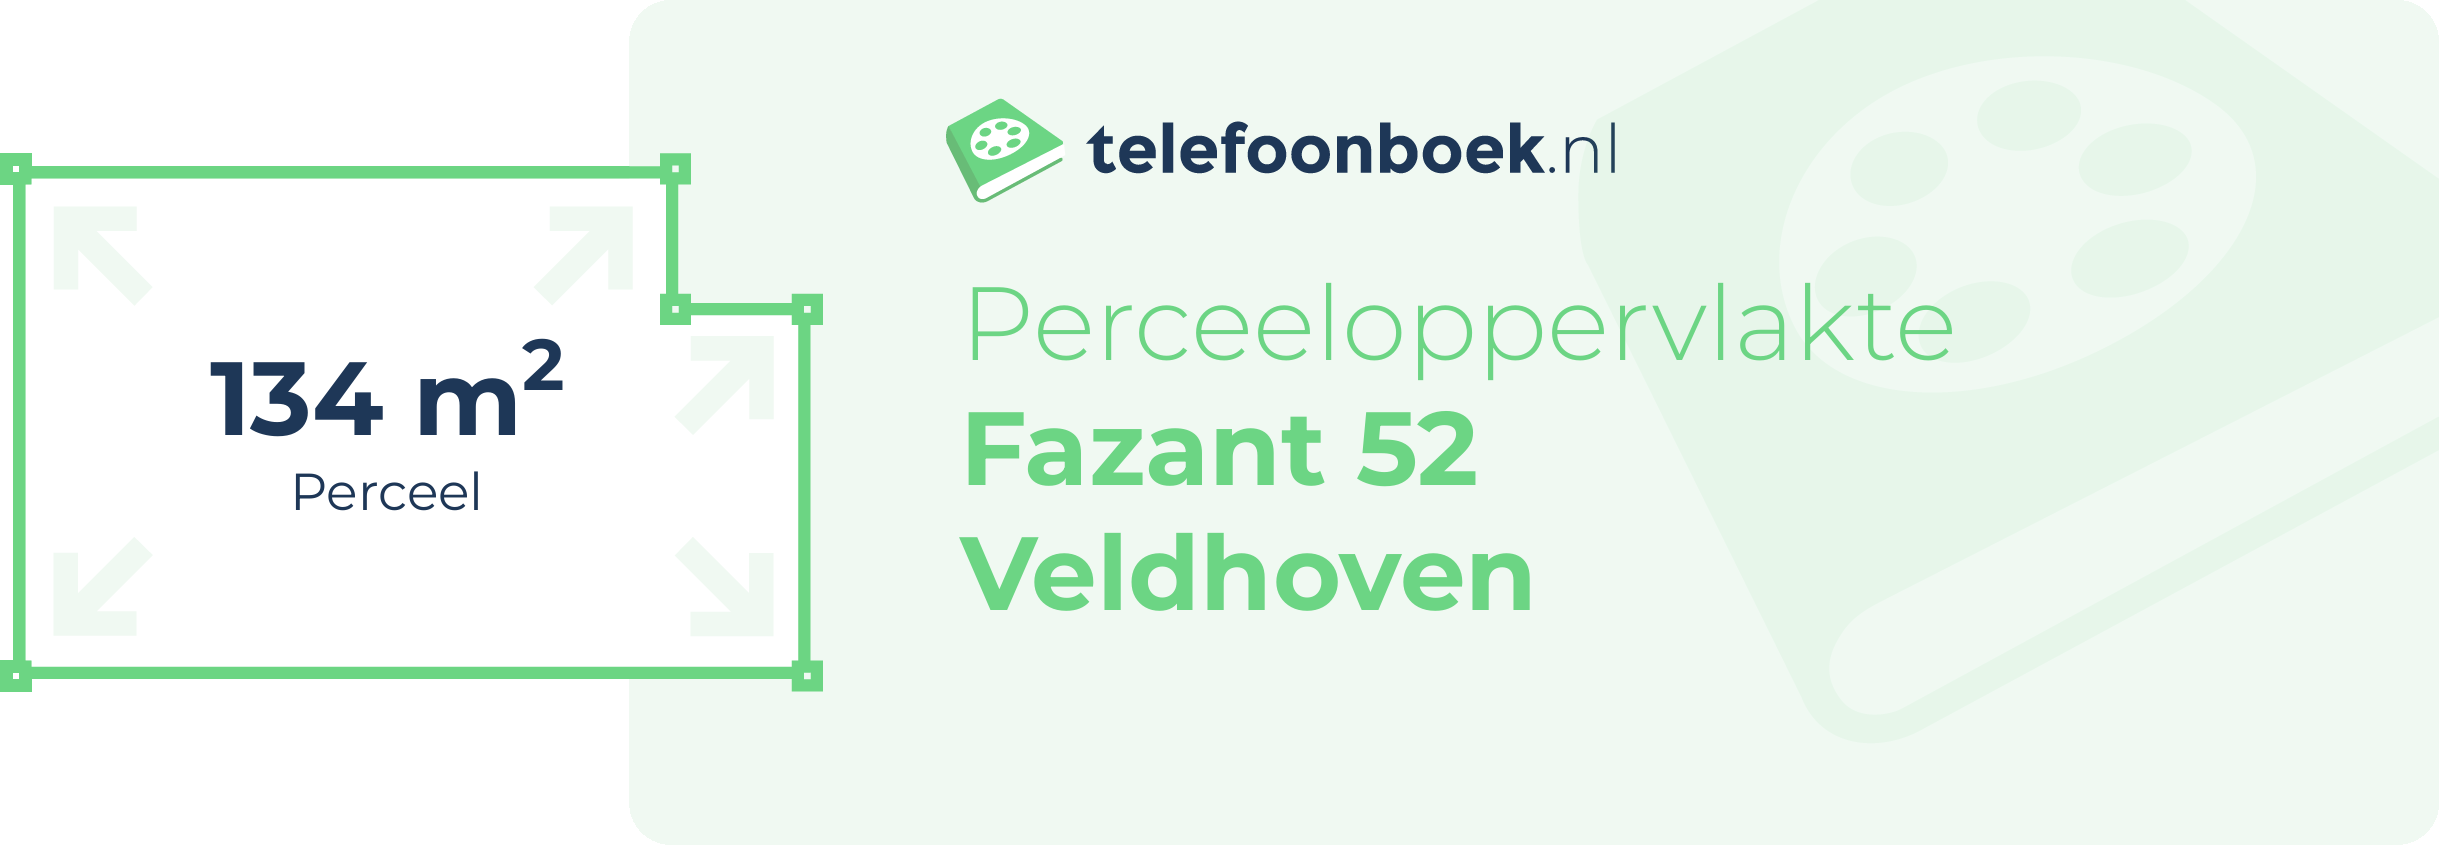 Perceeloppervlakte Fazant 52 Veldhoven